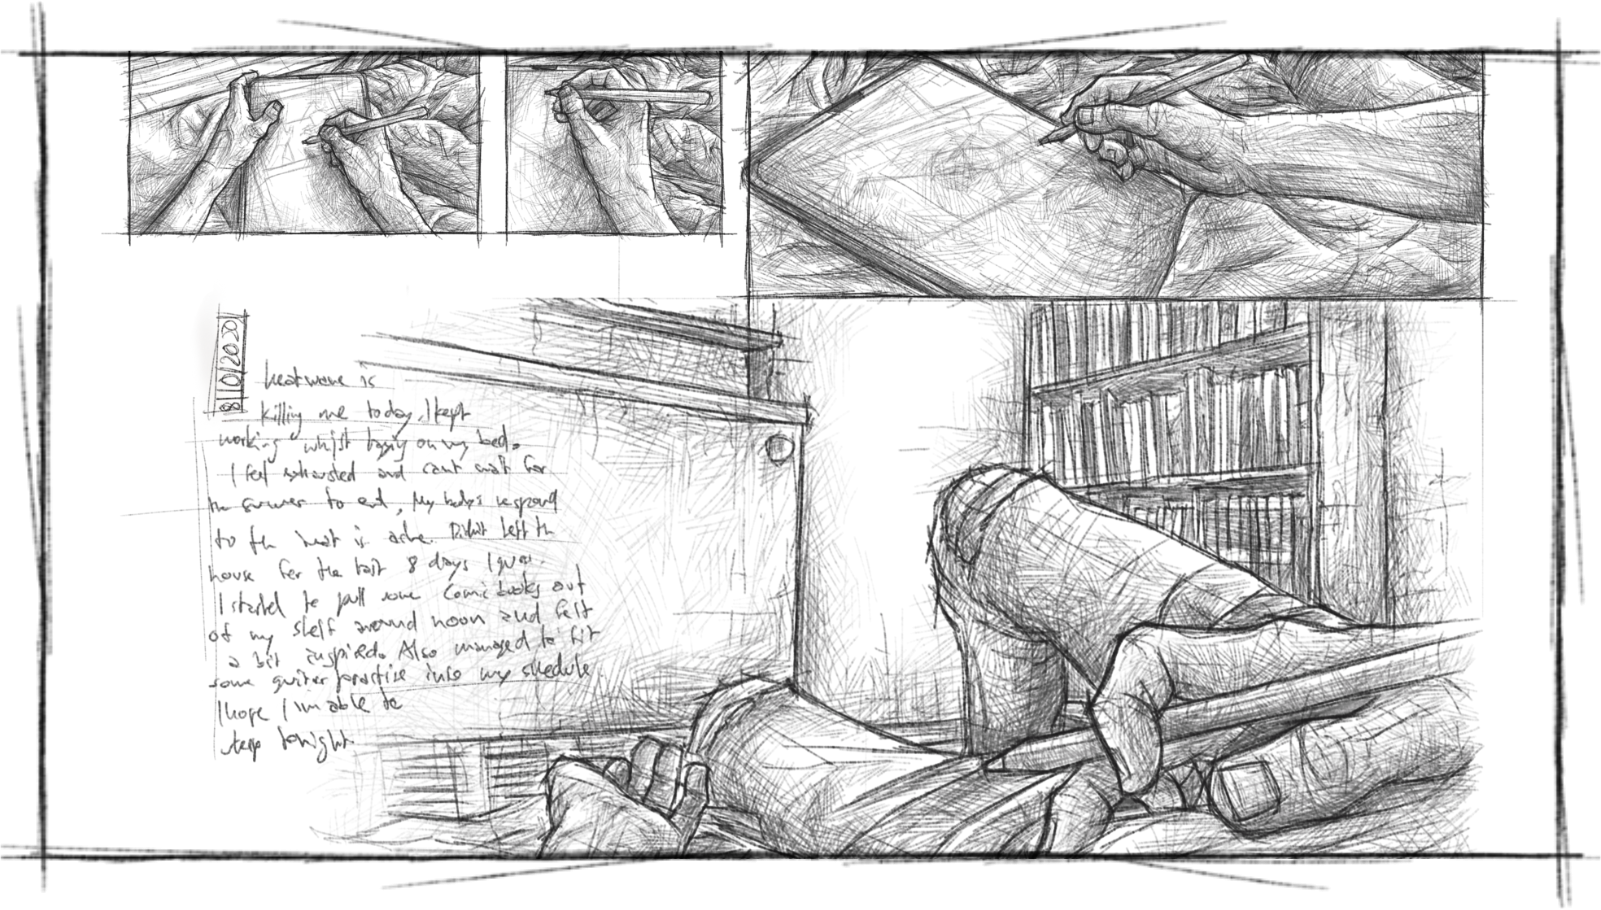 Eine Comic Seite auf der man im Skizzenstil gezeichnete Panels sieht, die aus der Egoperspektive zeigen, wie eine Person auf dem Bett liegt und mit Apple Pencil auf ein iPad zeichnet